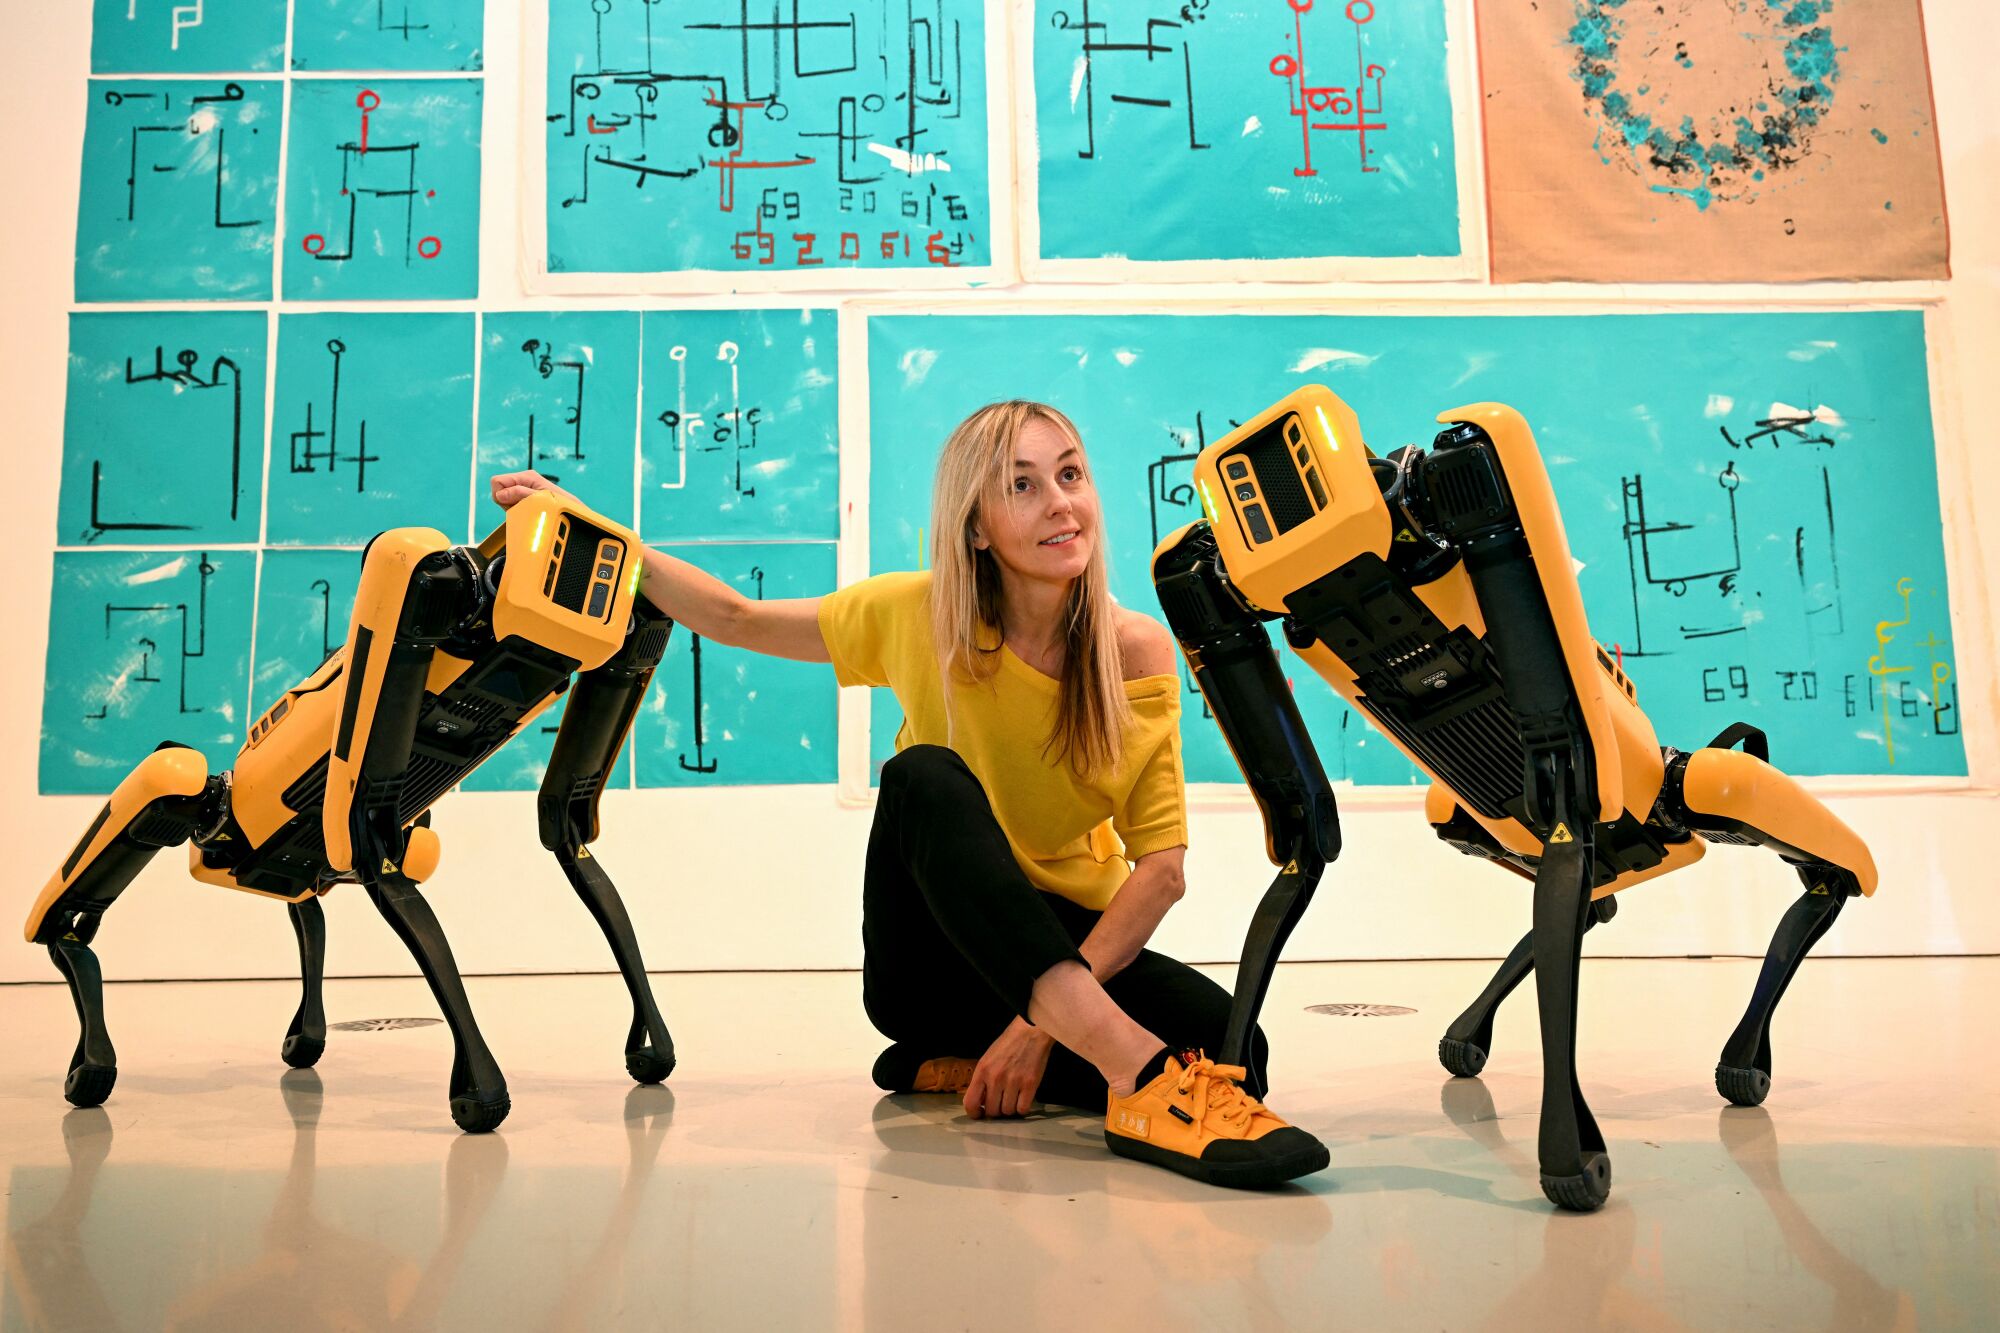 Agnieszka Pilat posing with robotic dogs